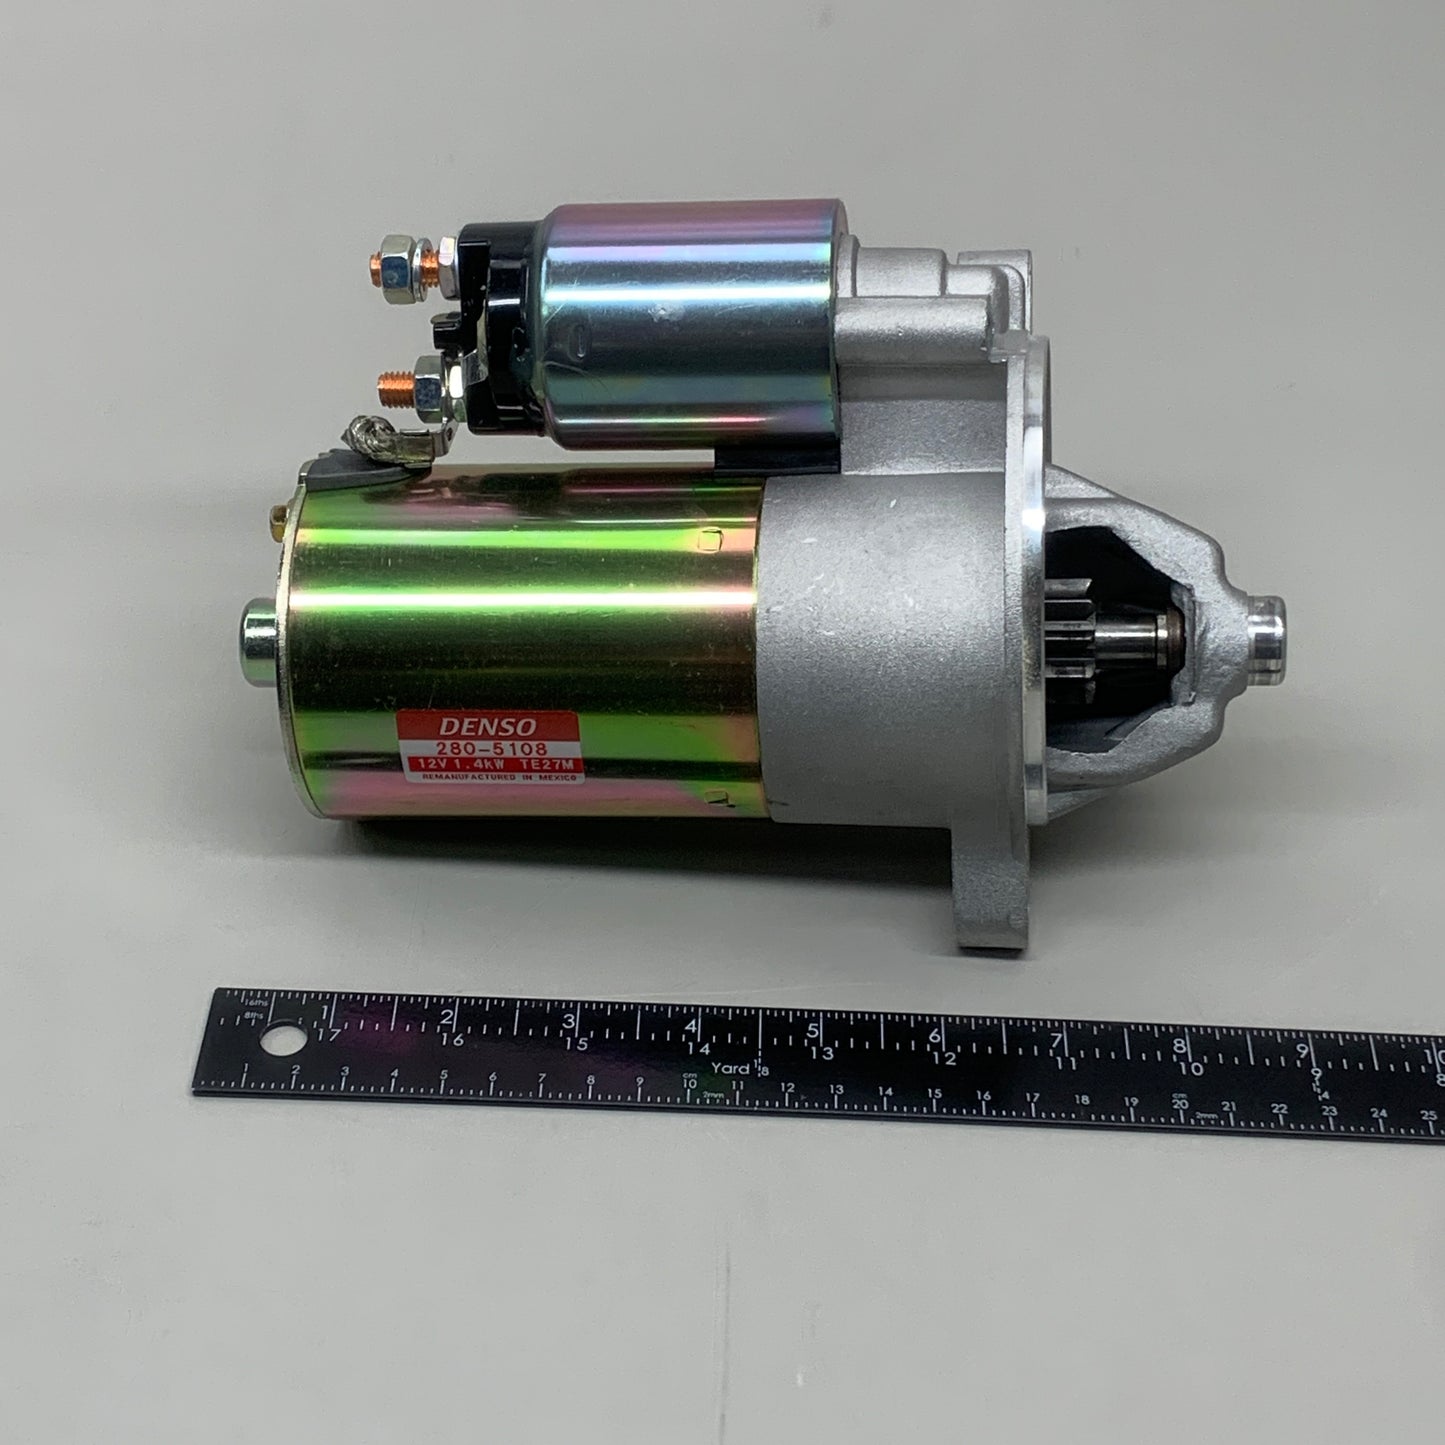 DENSO Starter Motor 12V 1.4kW 14719 280-5108 (Remanufactured)